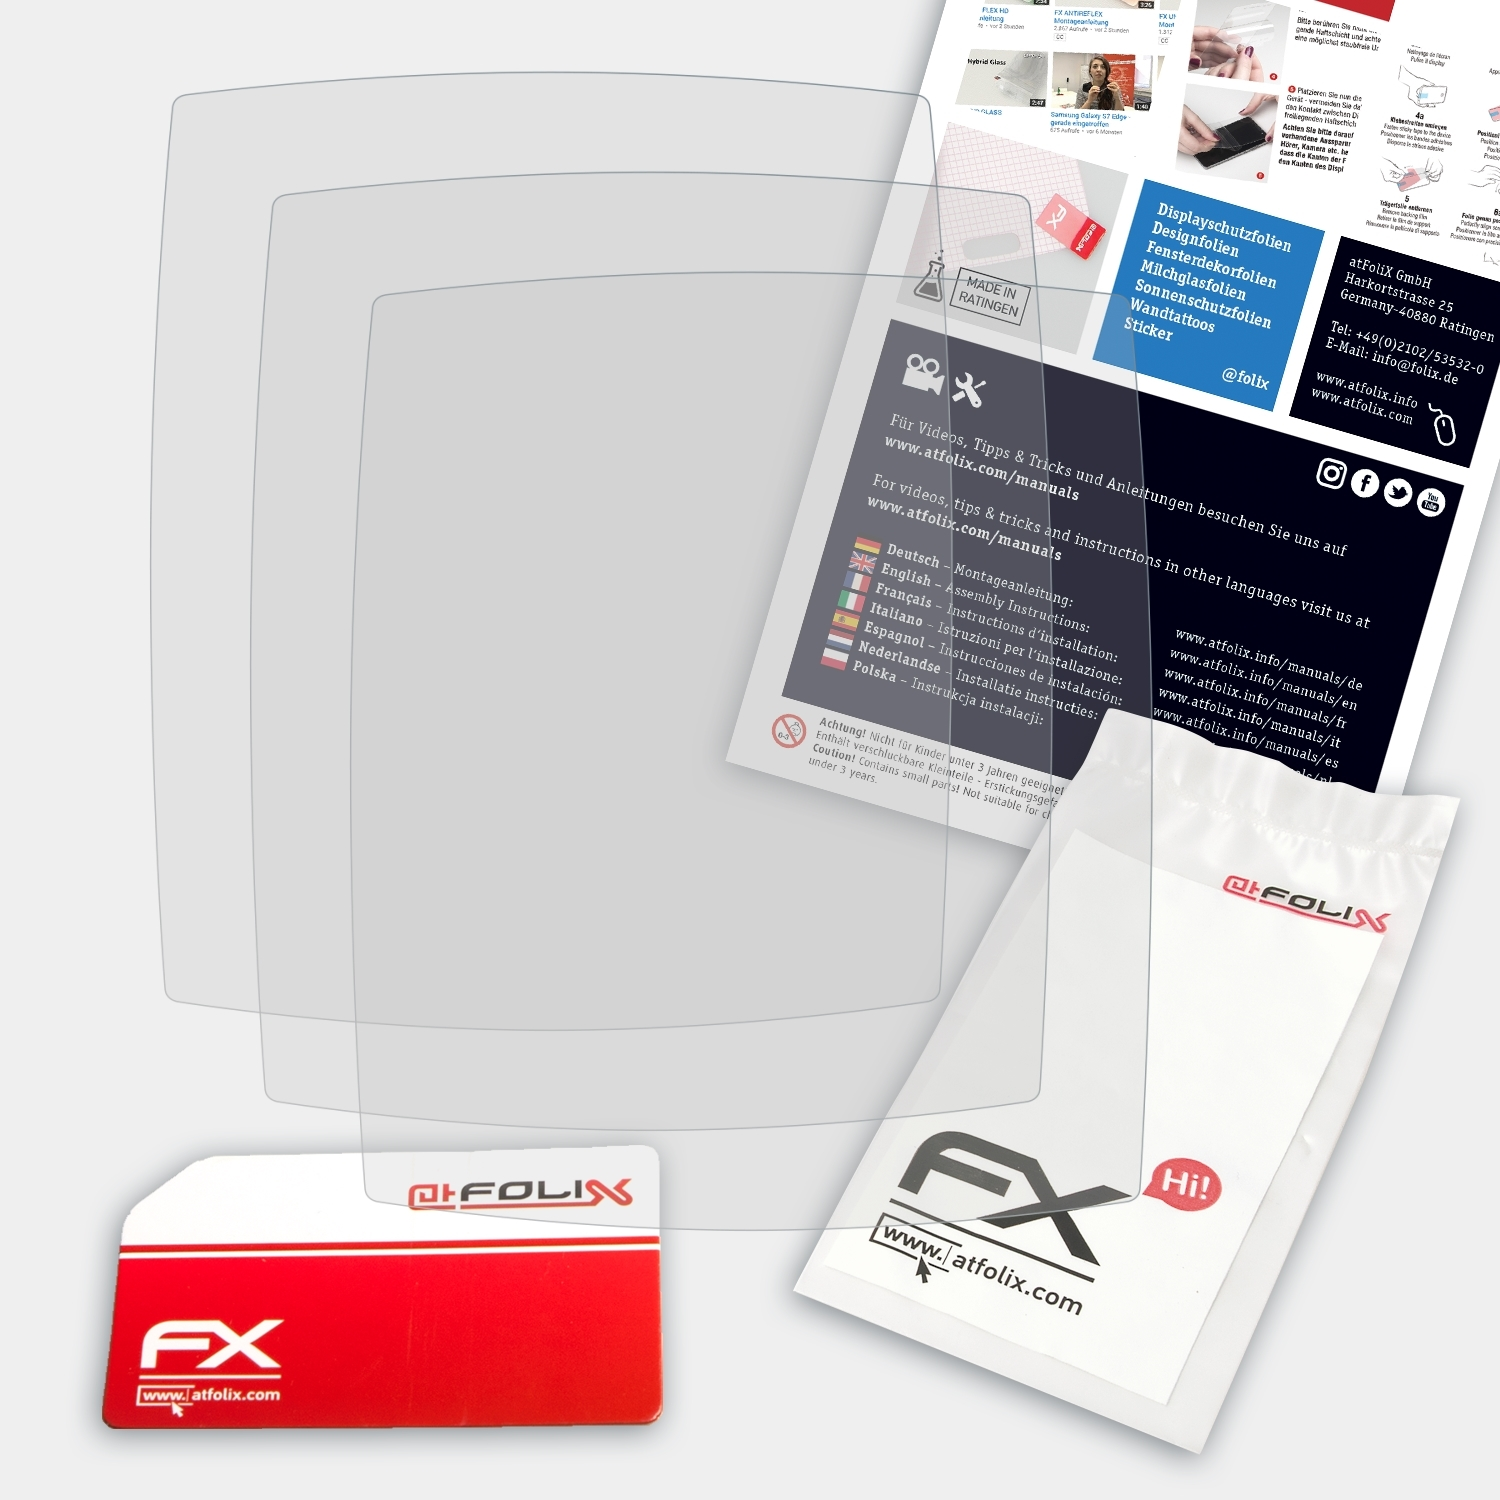 Rox Sigma 3x Displayschutz(für 10.0 GPS) FX-Antireflex ATFOLIX